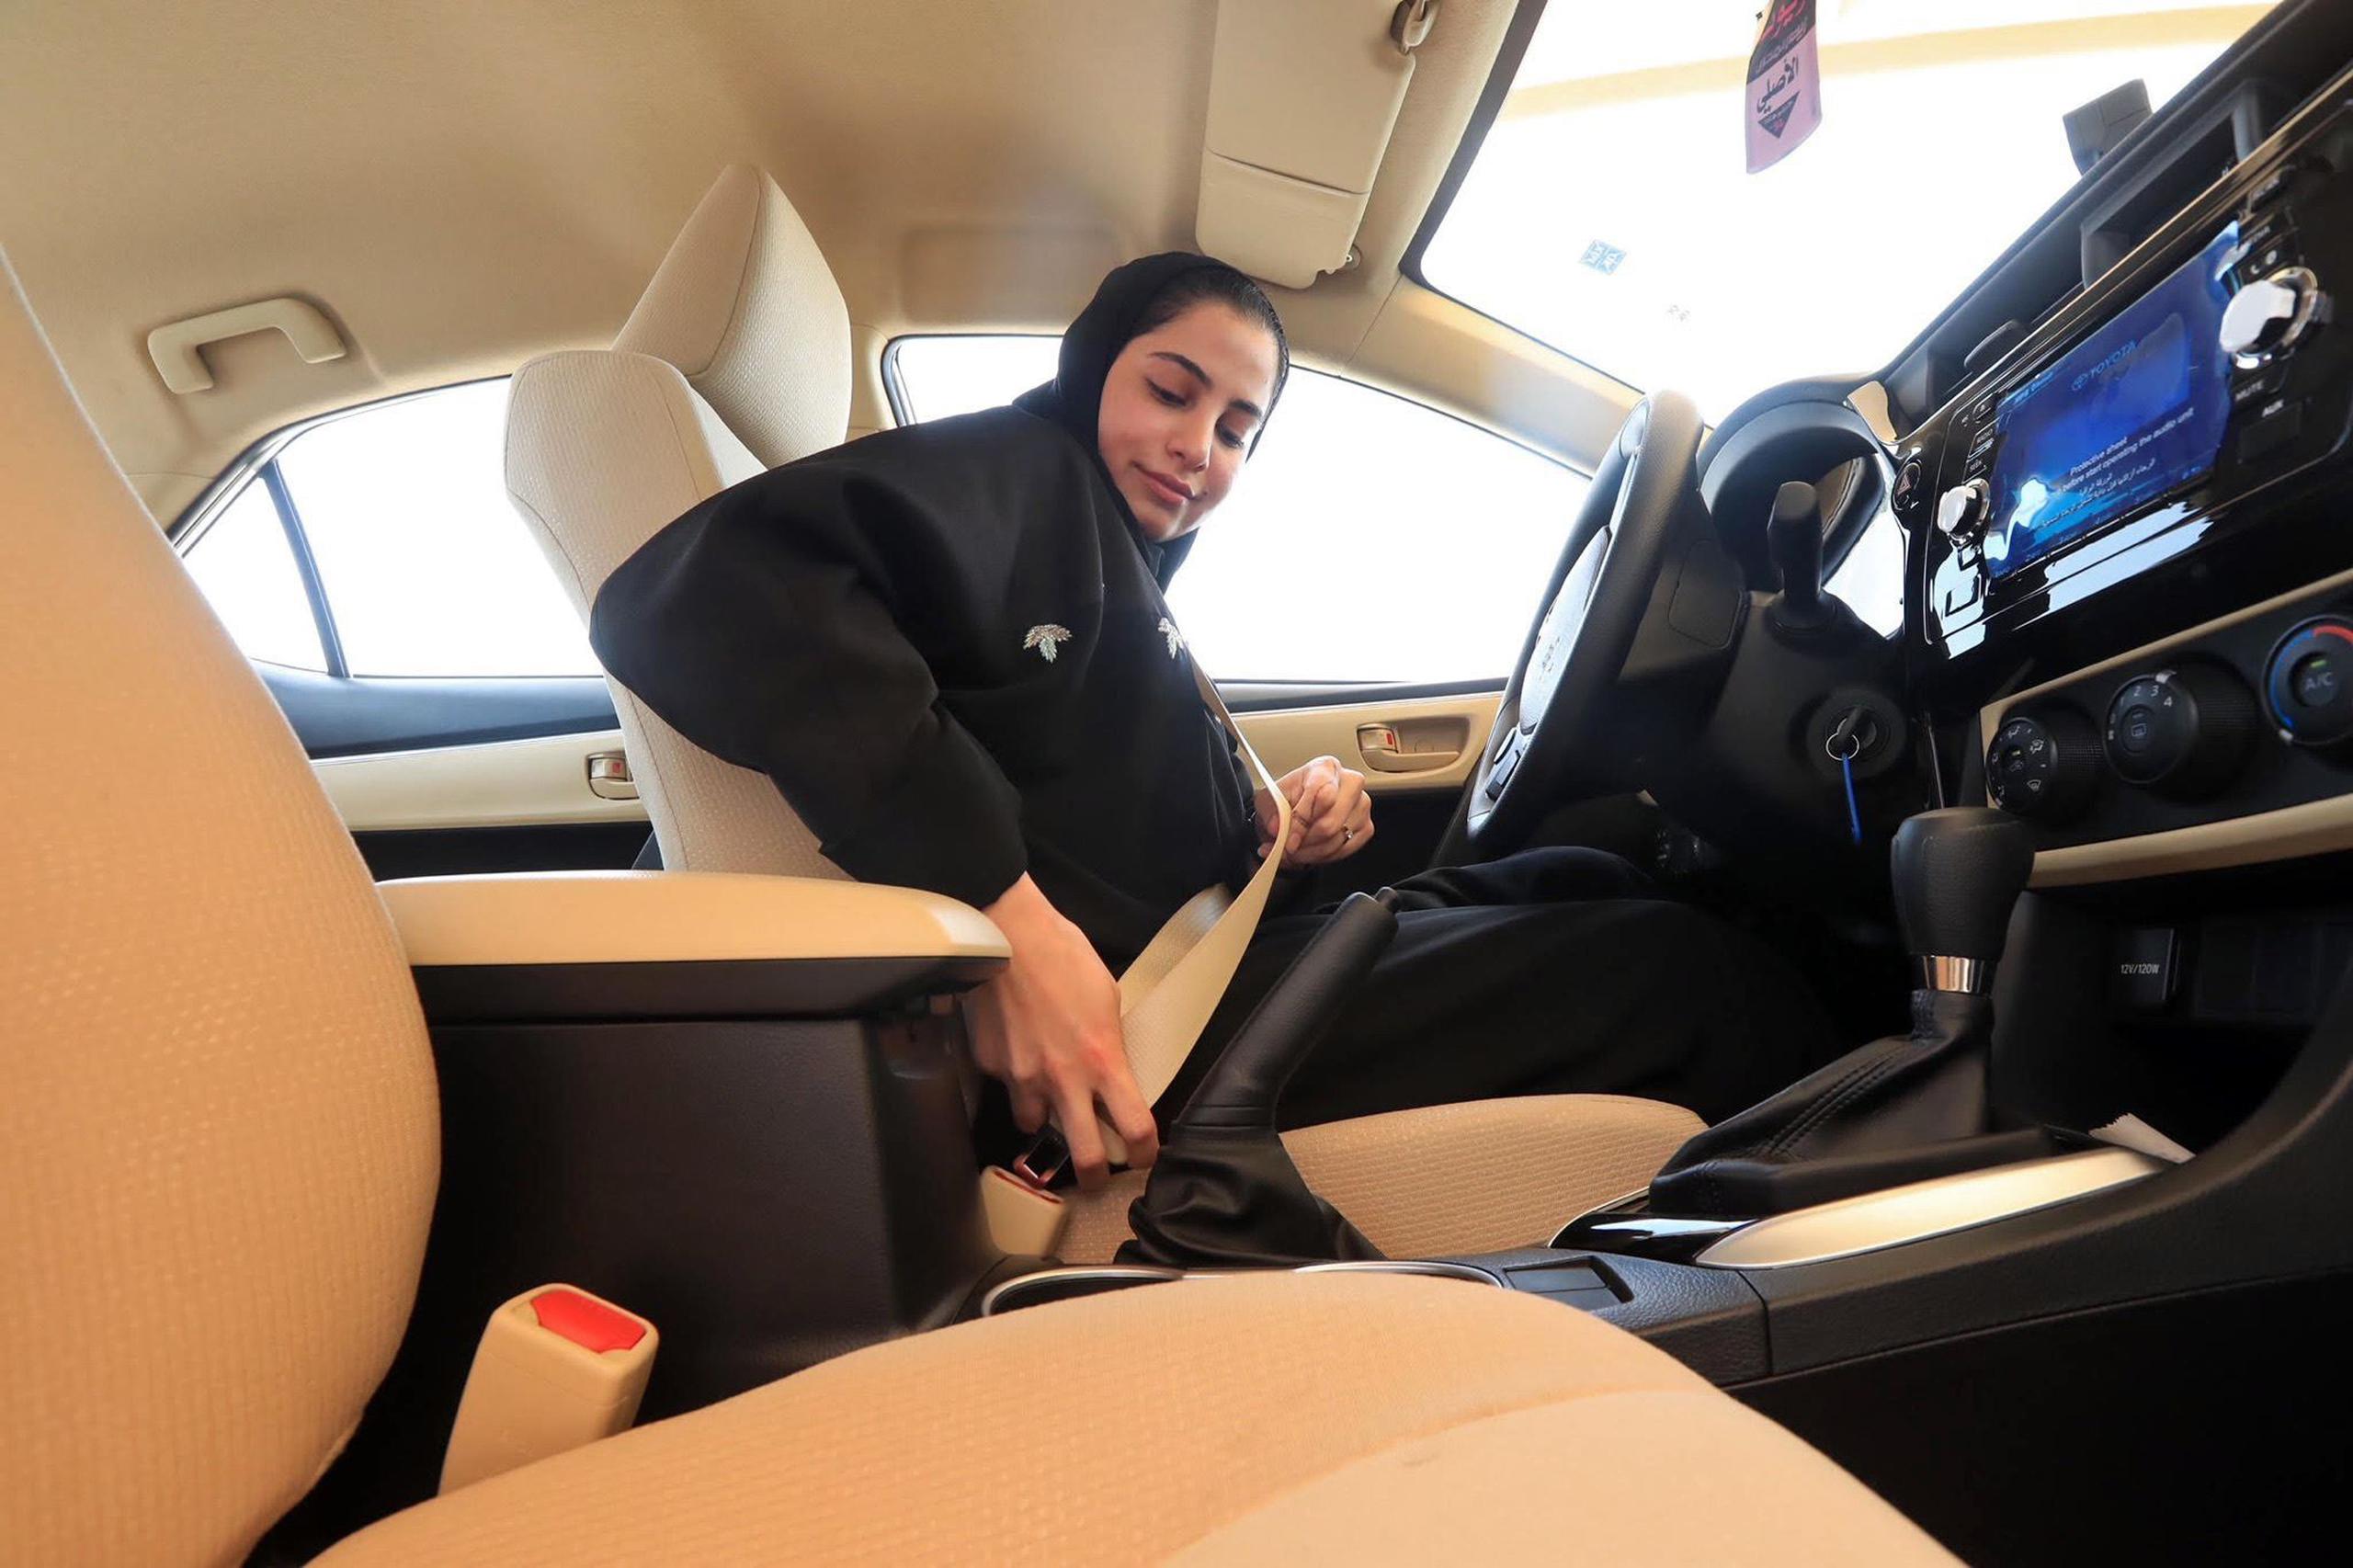 Una mujer saudita se abrocha el cinturón de seguridad en un auto de prueba antes de hacer un examen de manejo en el Departamento General de Tráfico, en la capital saudí de Riad. (AP)